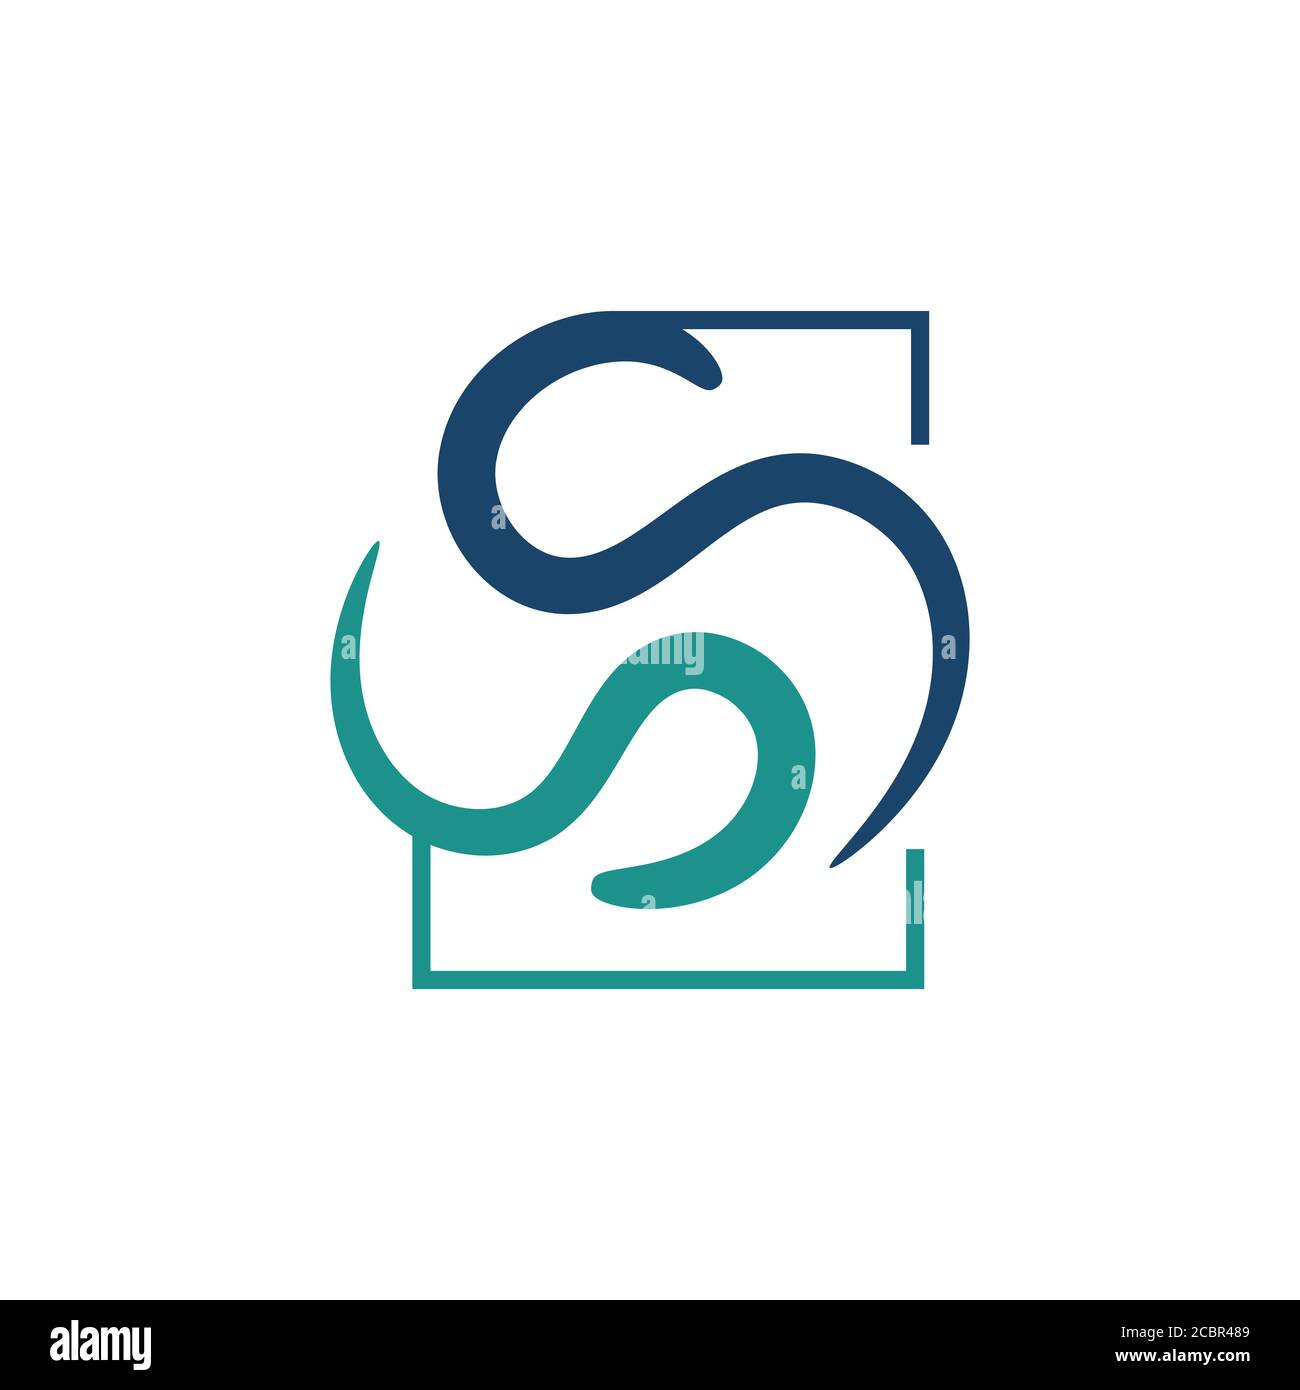 Kreative Initial SS Letter S S Logo Design Vektorgrafik Konzeptillustrationen Stock Vektor